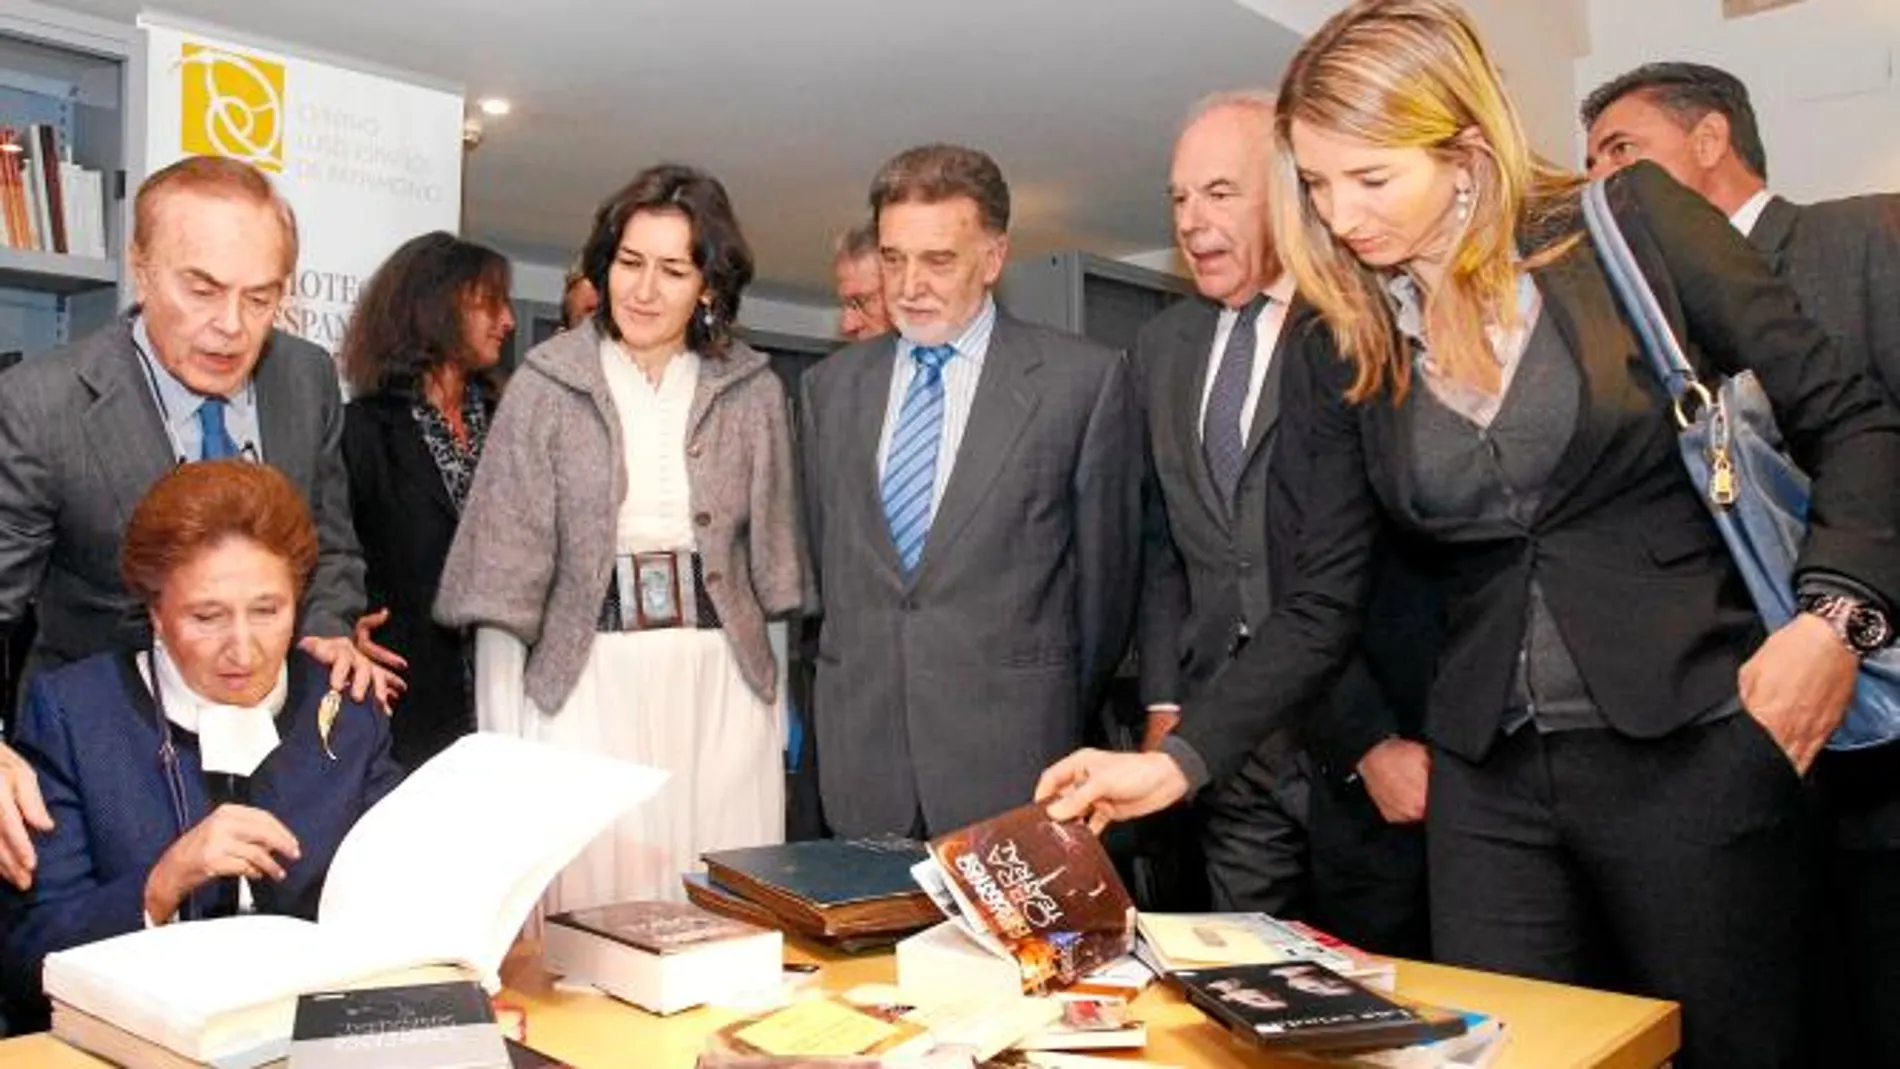 Los Duques de Soria, Benjumea, González-Sinde, Alicia García, Benjumea y Alejo, en la inauguración de la Biblioteca